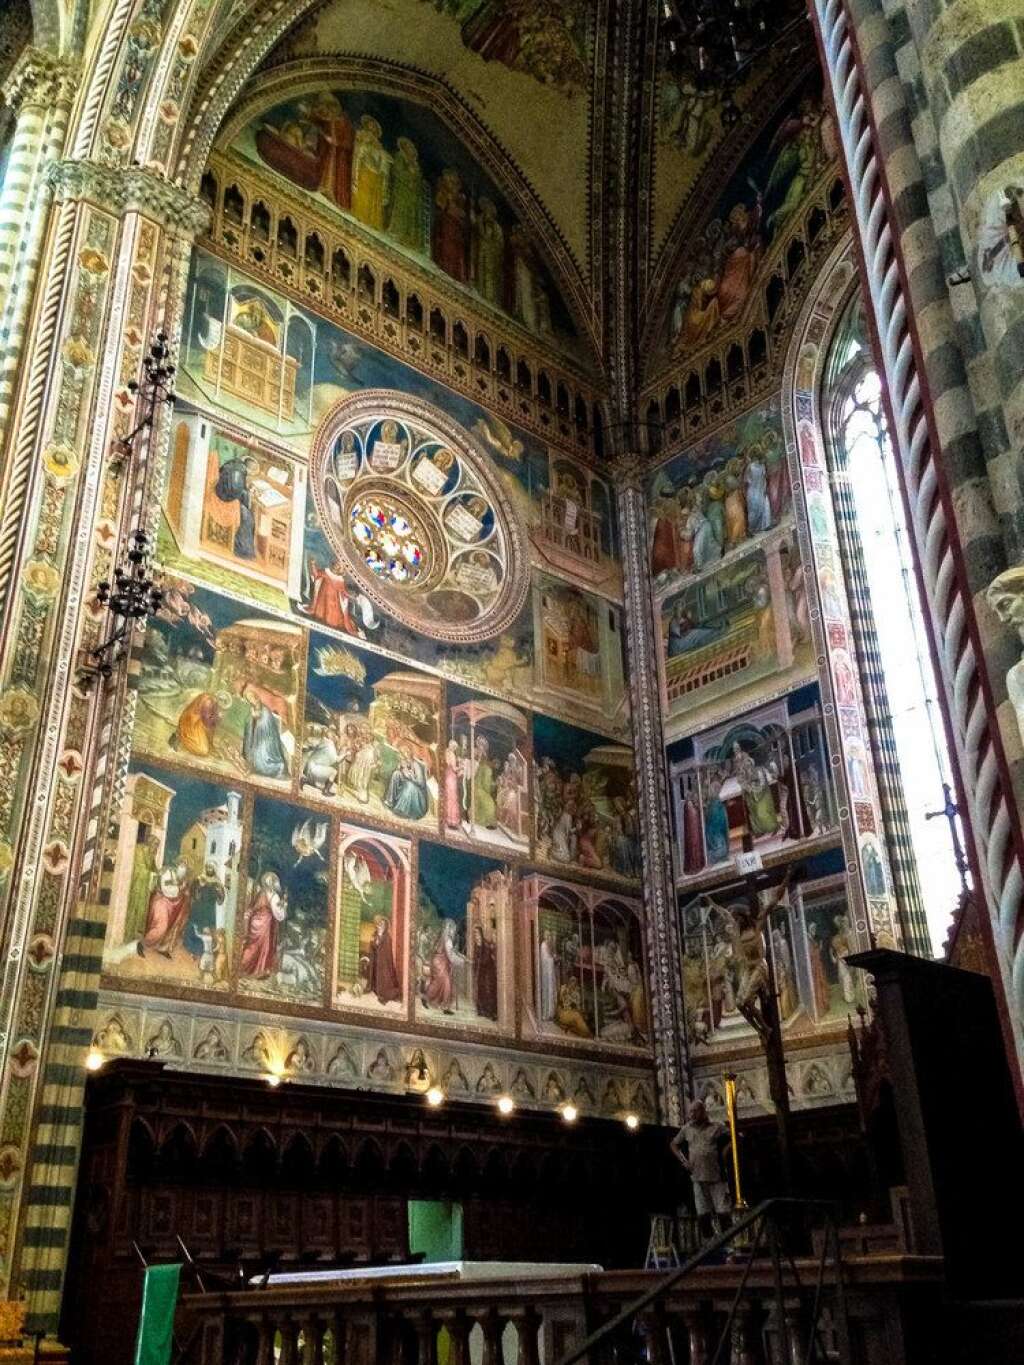 La chapelle San Brizio - Les peintures de la chapelle Saint Brice représentent un témoignage inestimable de l'art pictural italien de cette époque. Réalisées par Fra Angelico, appelé le peintre des anges, ces peintures mettent en scène le jugement dernier.